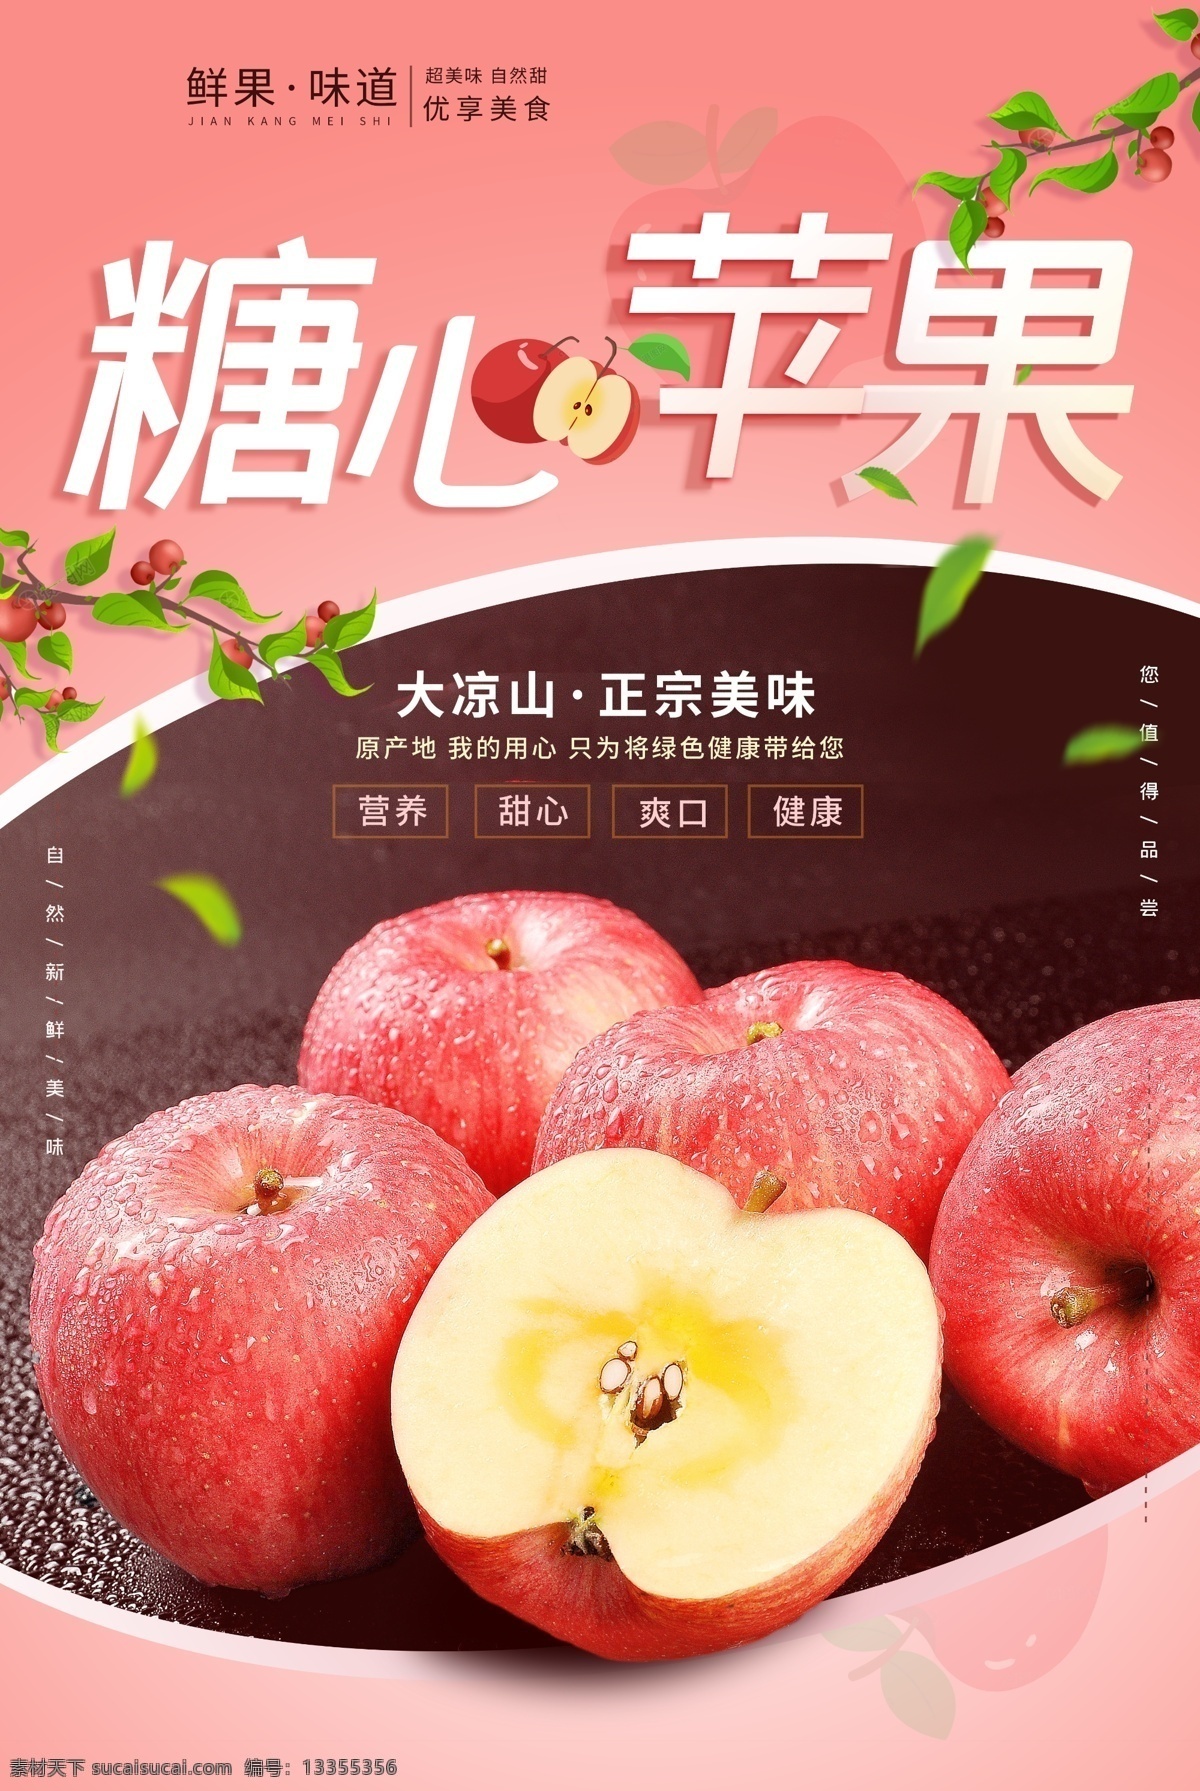 糖 心 苹果 水果 活动 海报 素材图片 糖心苹果 餐饮美食 类